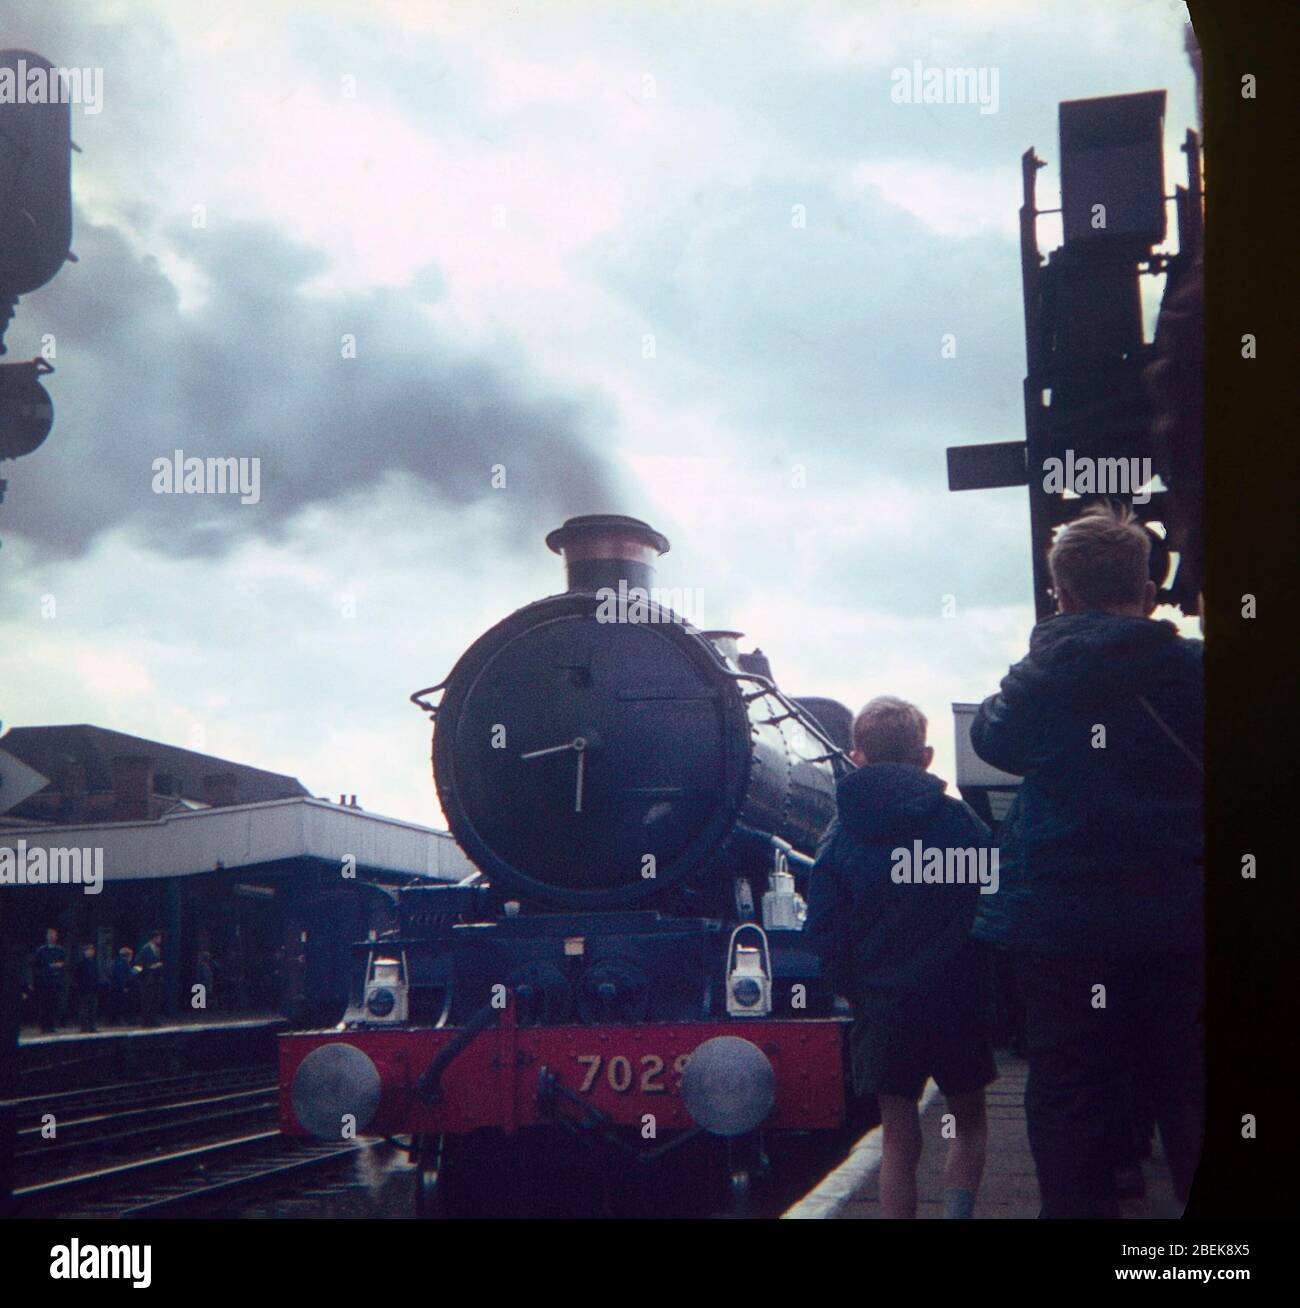 1967, les amateurs de chemins de fer regardaient les trains à vapeur de la ligne principale, Doncaster, nord de l'Angleterre, Royaume-Uni Banque D'Images